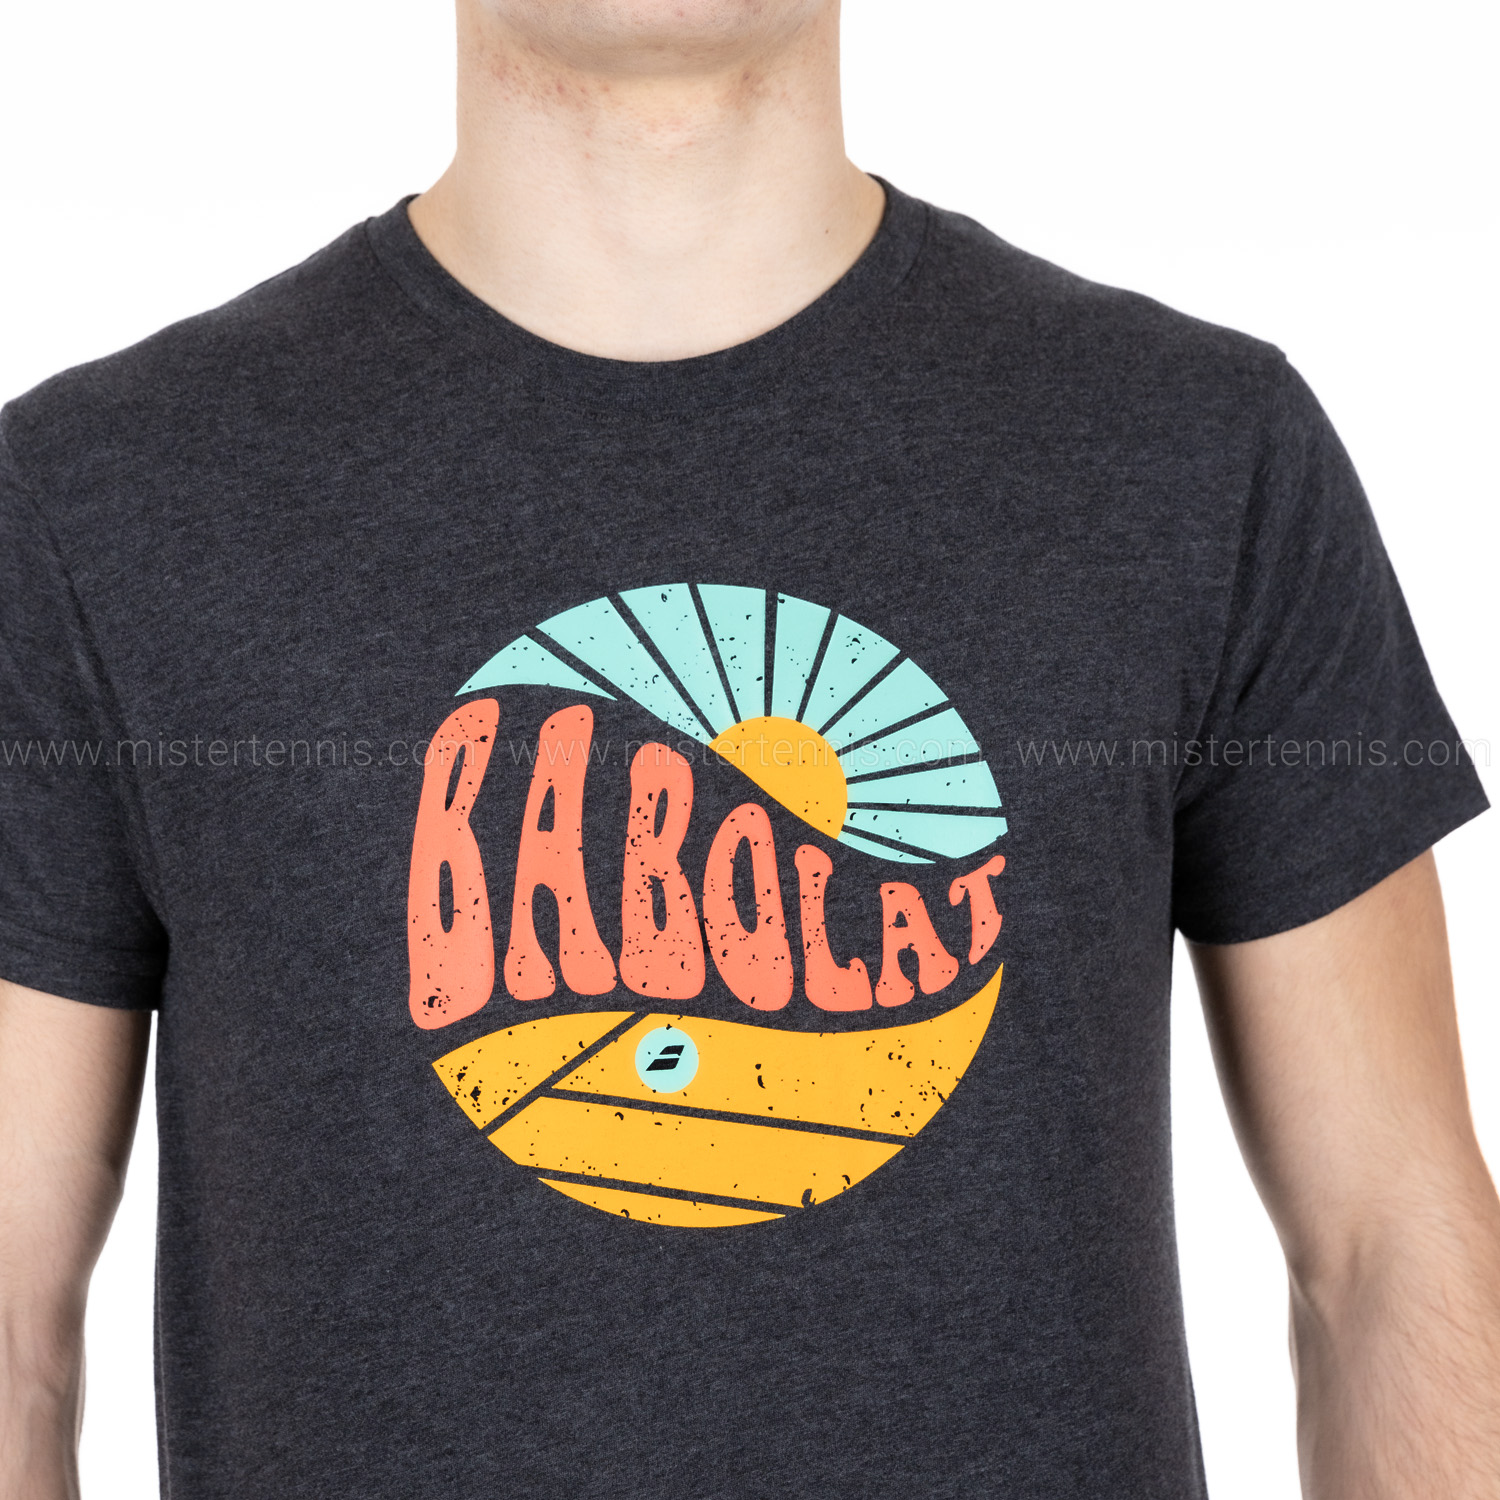 Babolat Exercise Vintage T-Shirt - Black Heather